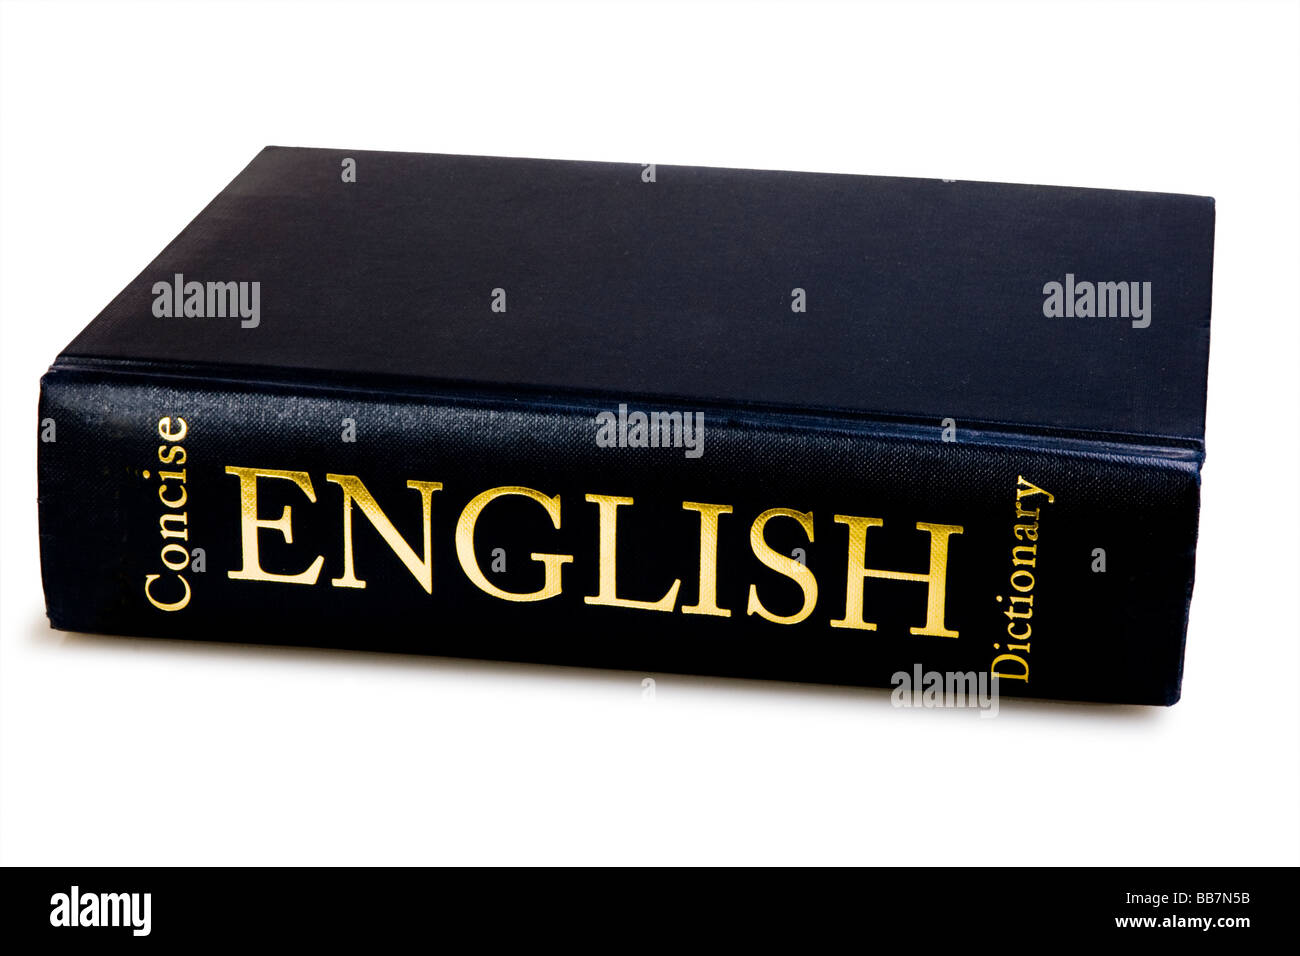 English dictionary Stock Photo